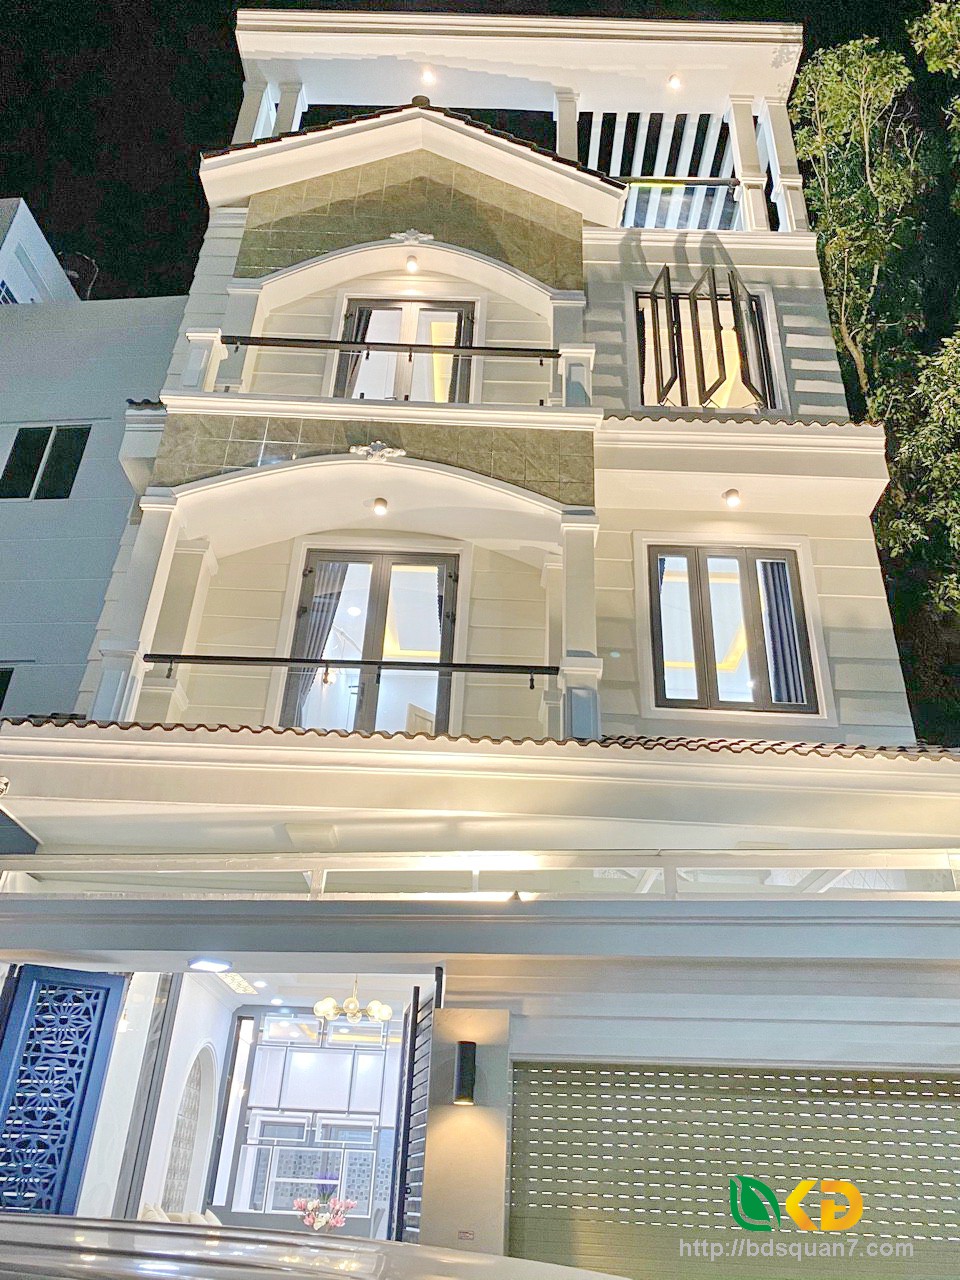 Bán nhà mới hoàn thiện kiểu biệt thự tân cổ điển tại khu Cafe Omely đường Đào Tông Nguyên Phú Xuân Nhà Bè